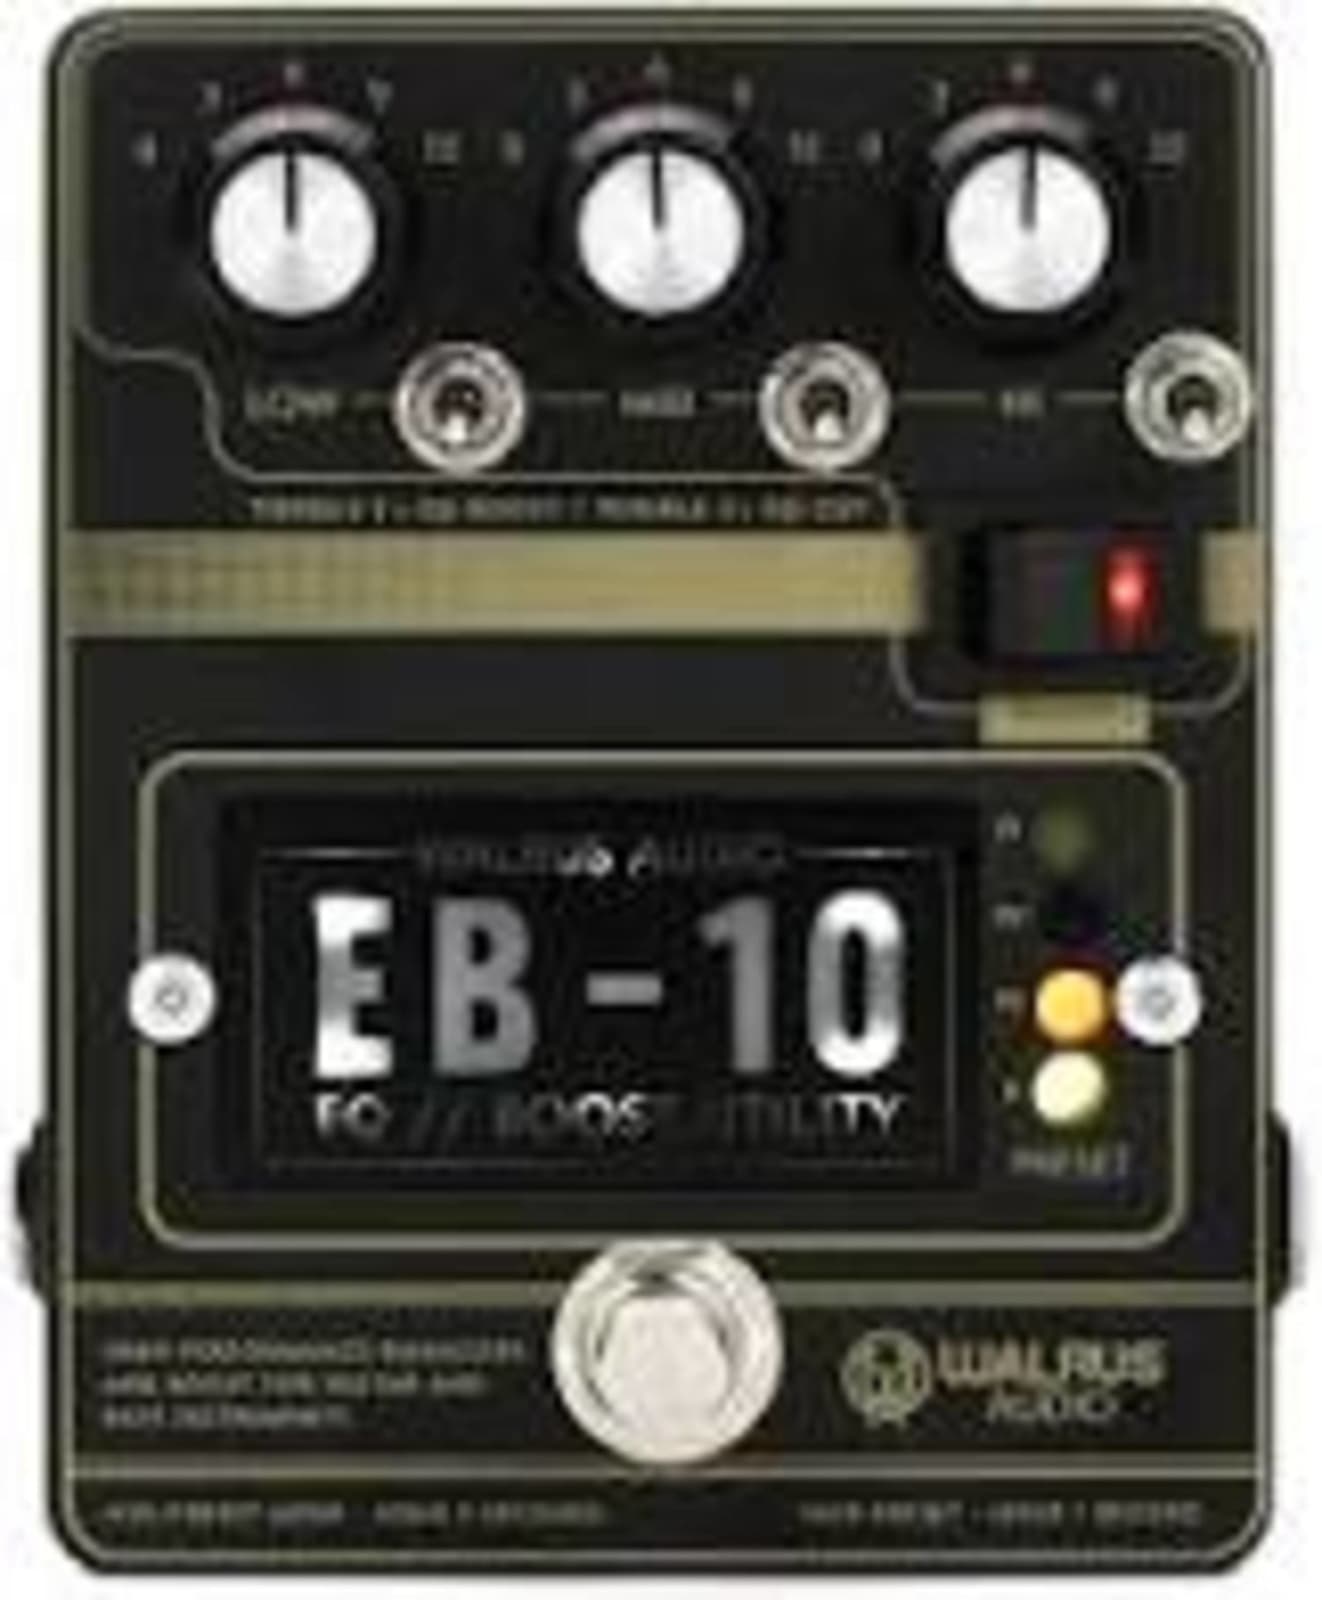 Walrus Audio EB-10 Preamp/EQ/Boost (Black)